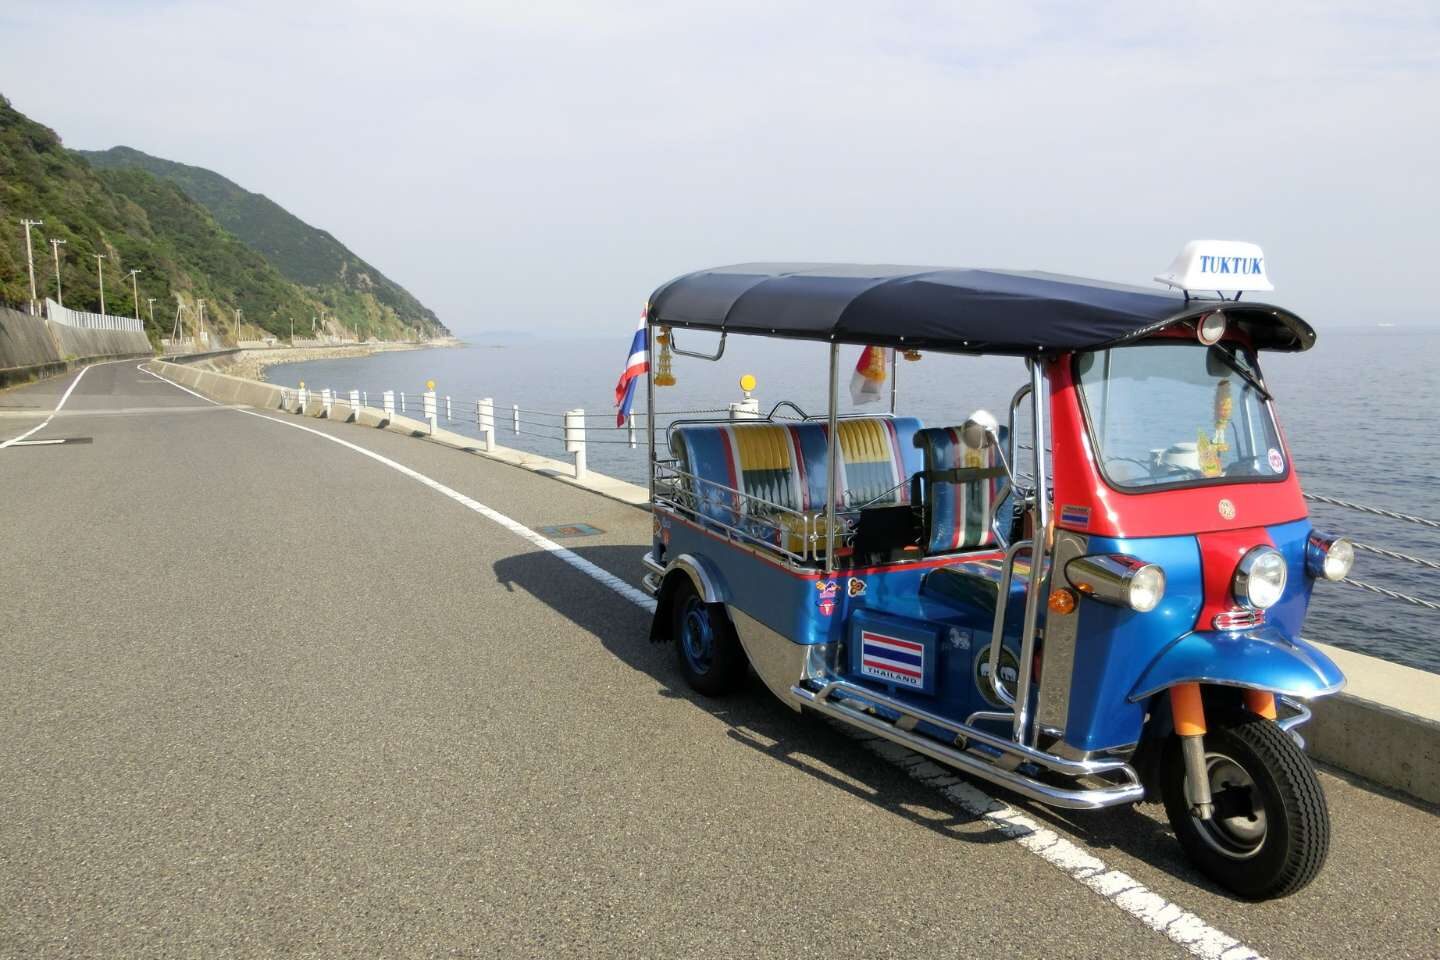 Famous Tuk Tuk vehicle of Thailand